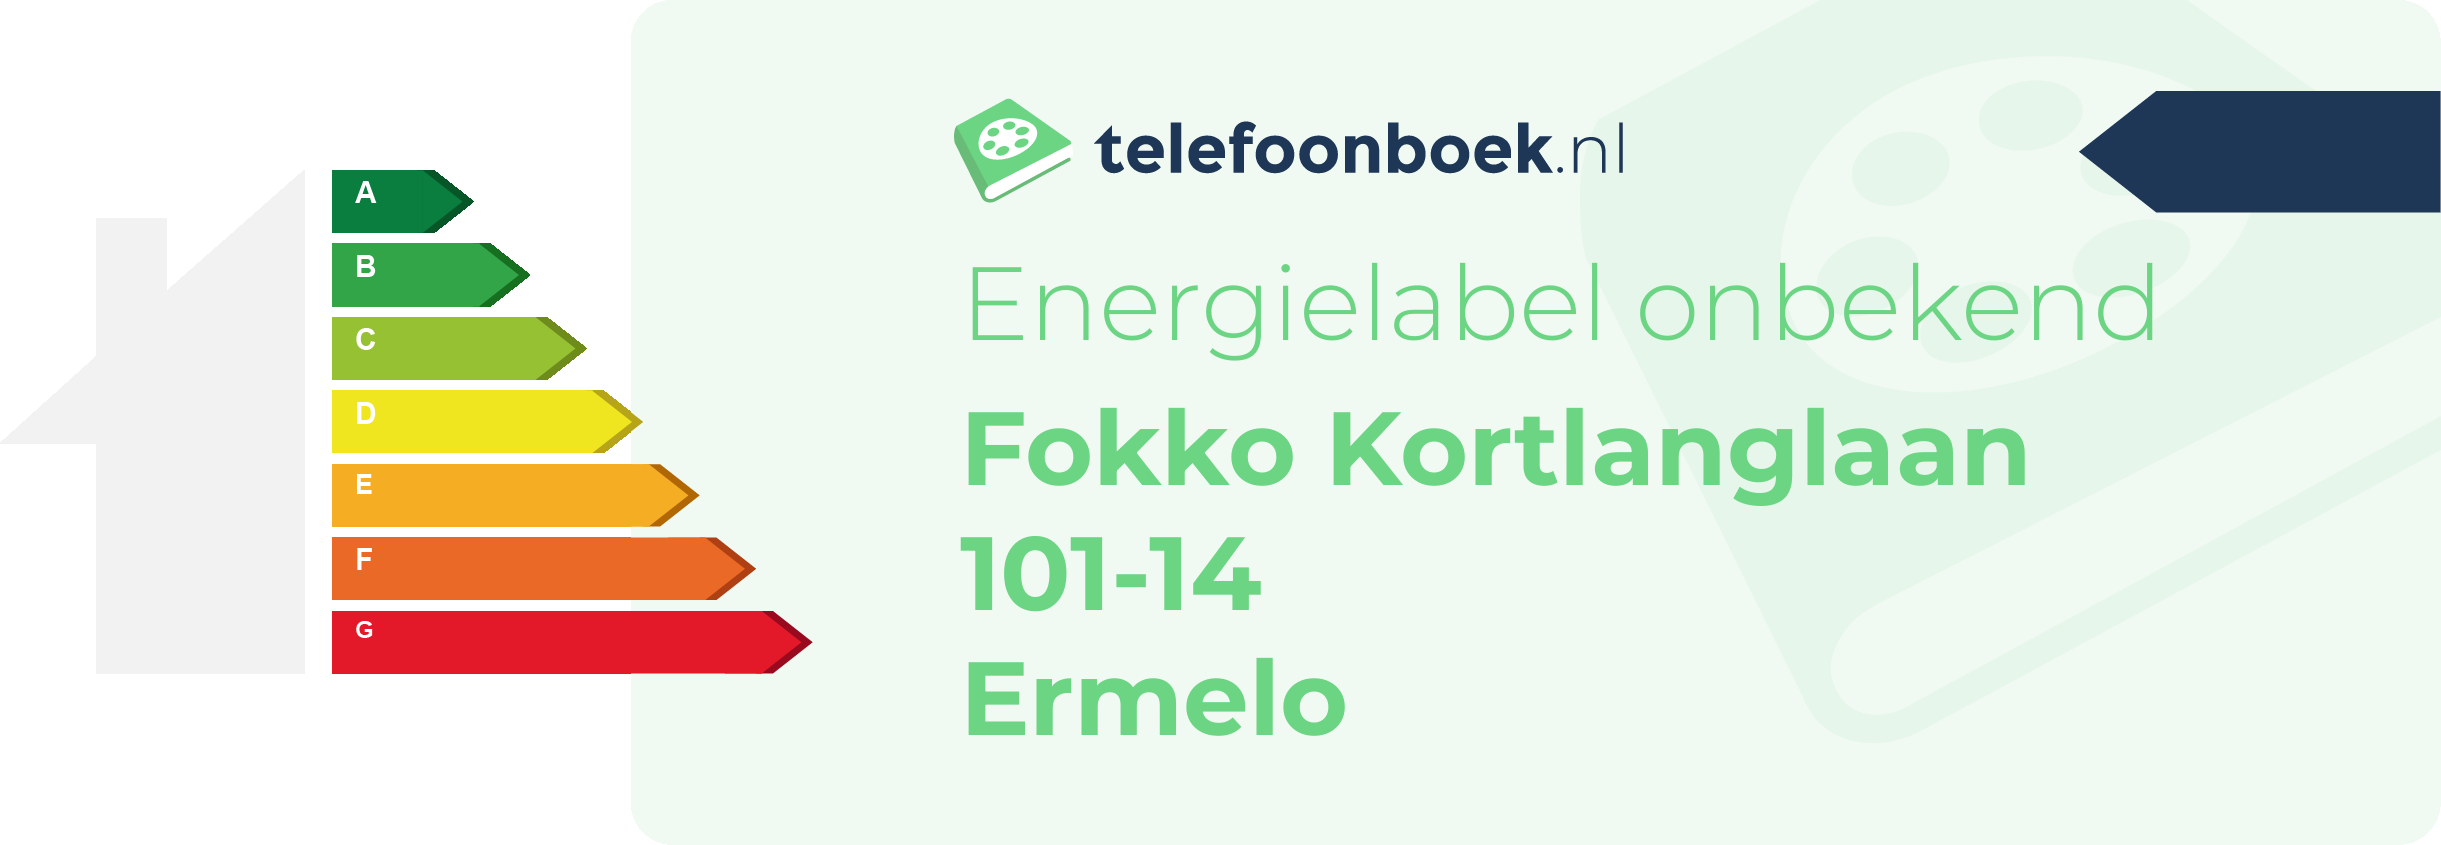 Energielabel Fokko Kortlanglaan 101-14 Ermelo